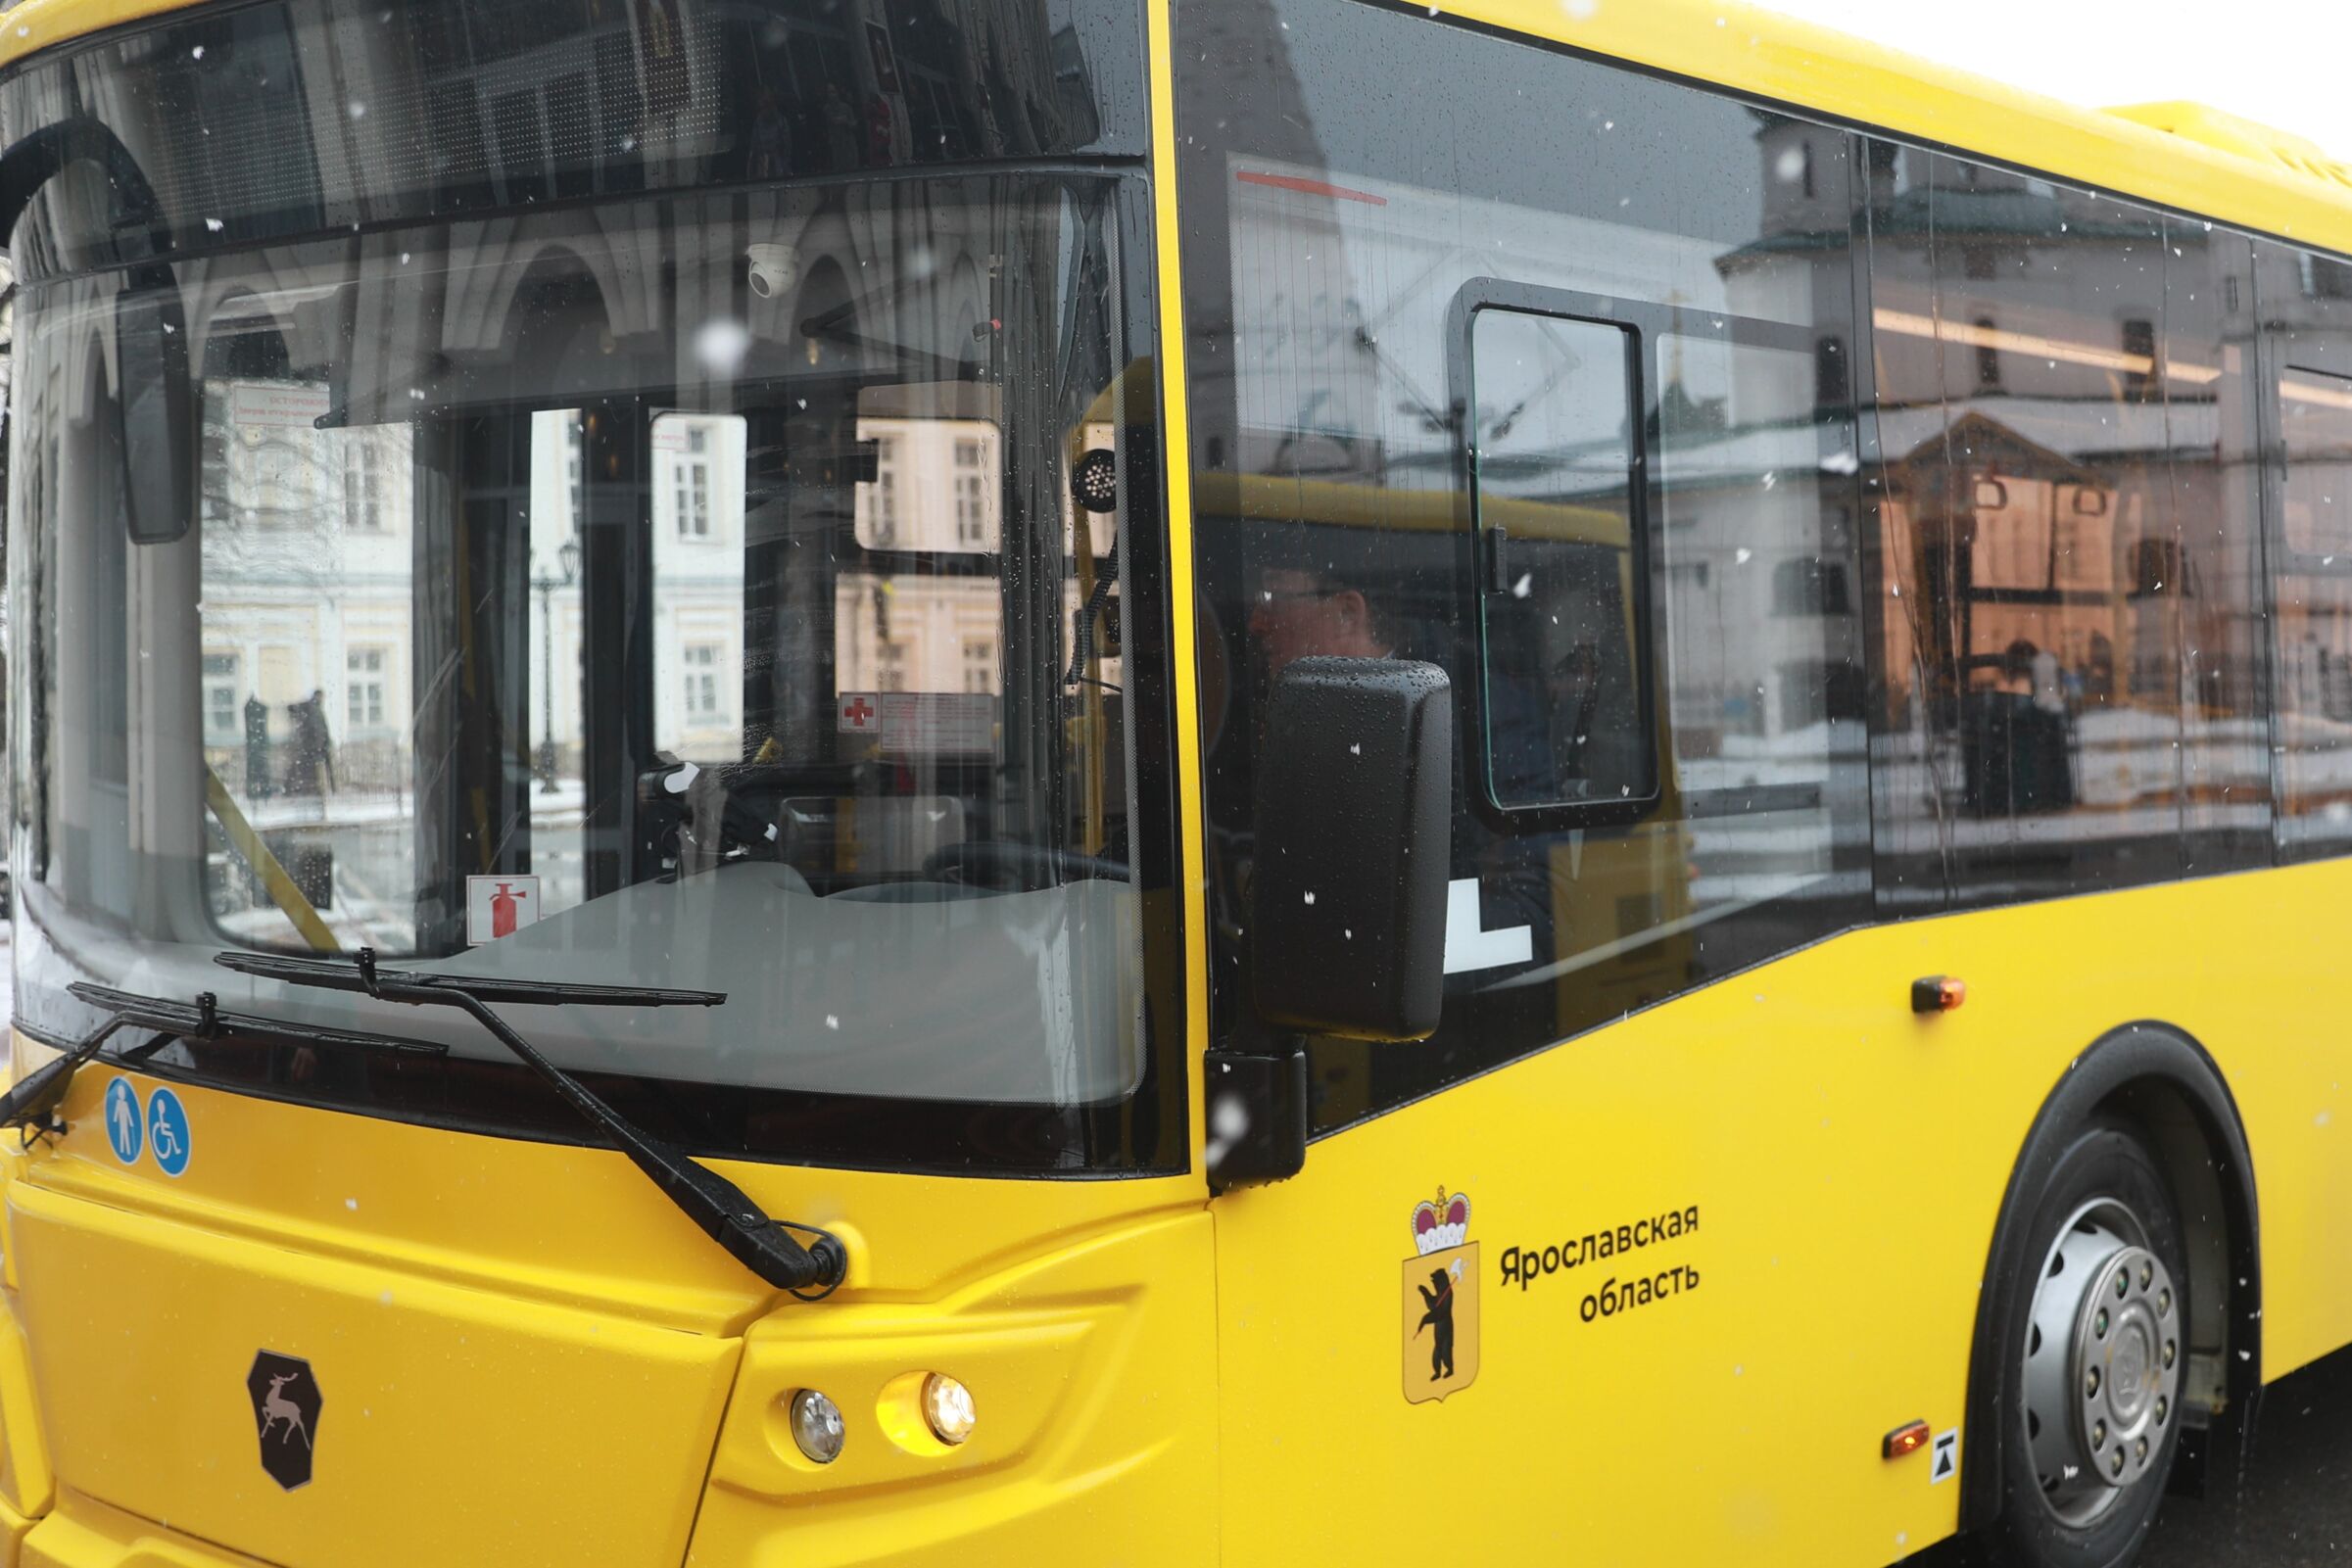 Ярославцы стали меньше жаловаться на работу общественного транспорта